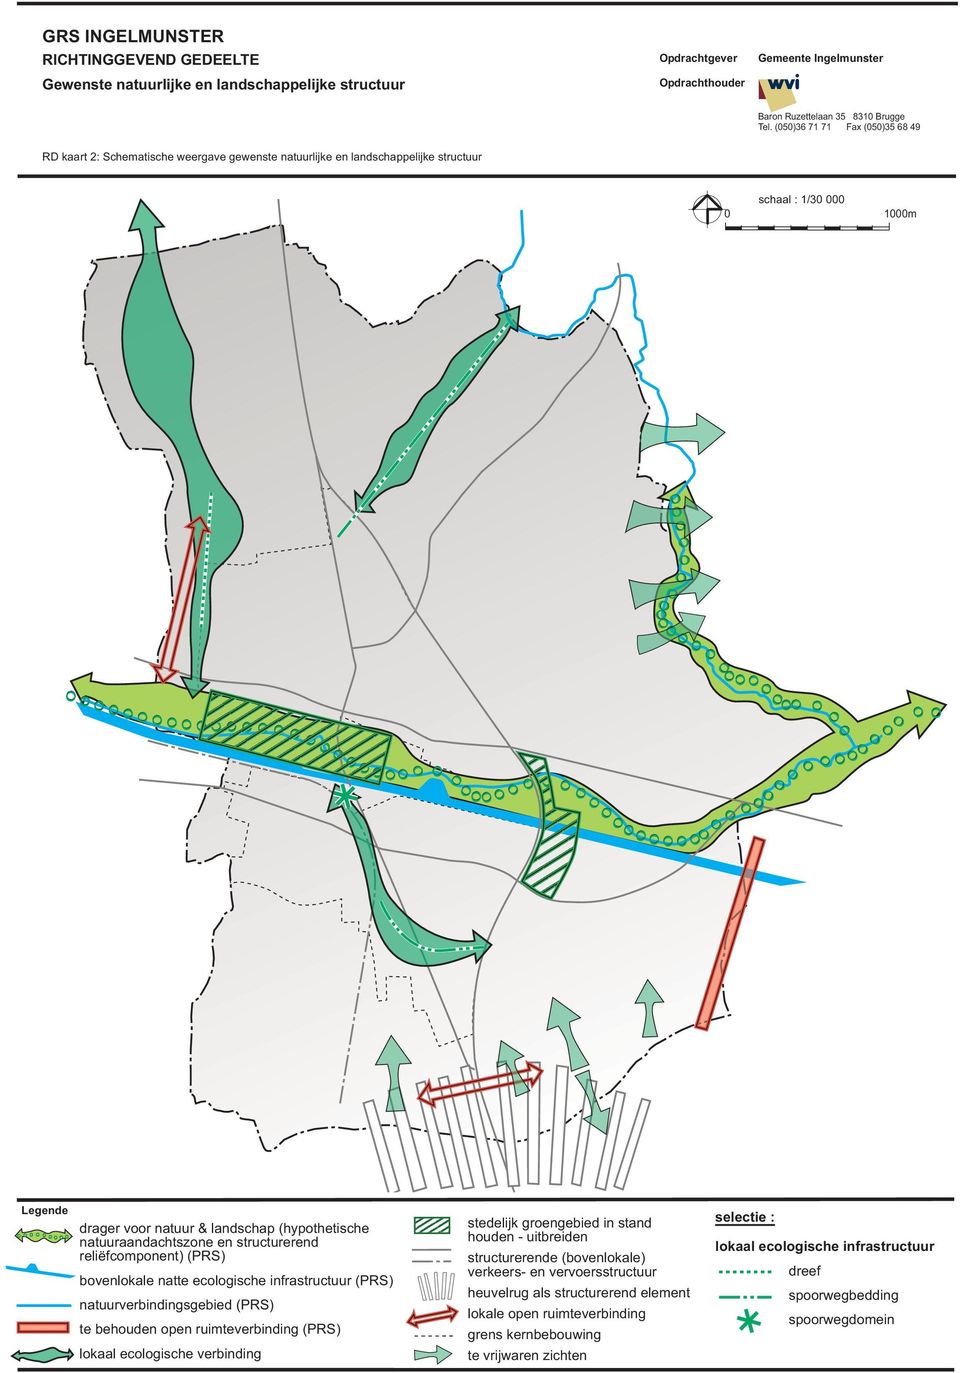 open ruimteverbinding (PRS) lokaal ecologische verbinding stedelijk groengebied in stand houden - uitbreiden structurerende (bovenlokale) verkeers- en vervoersstructuur